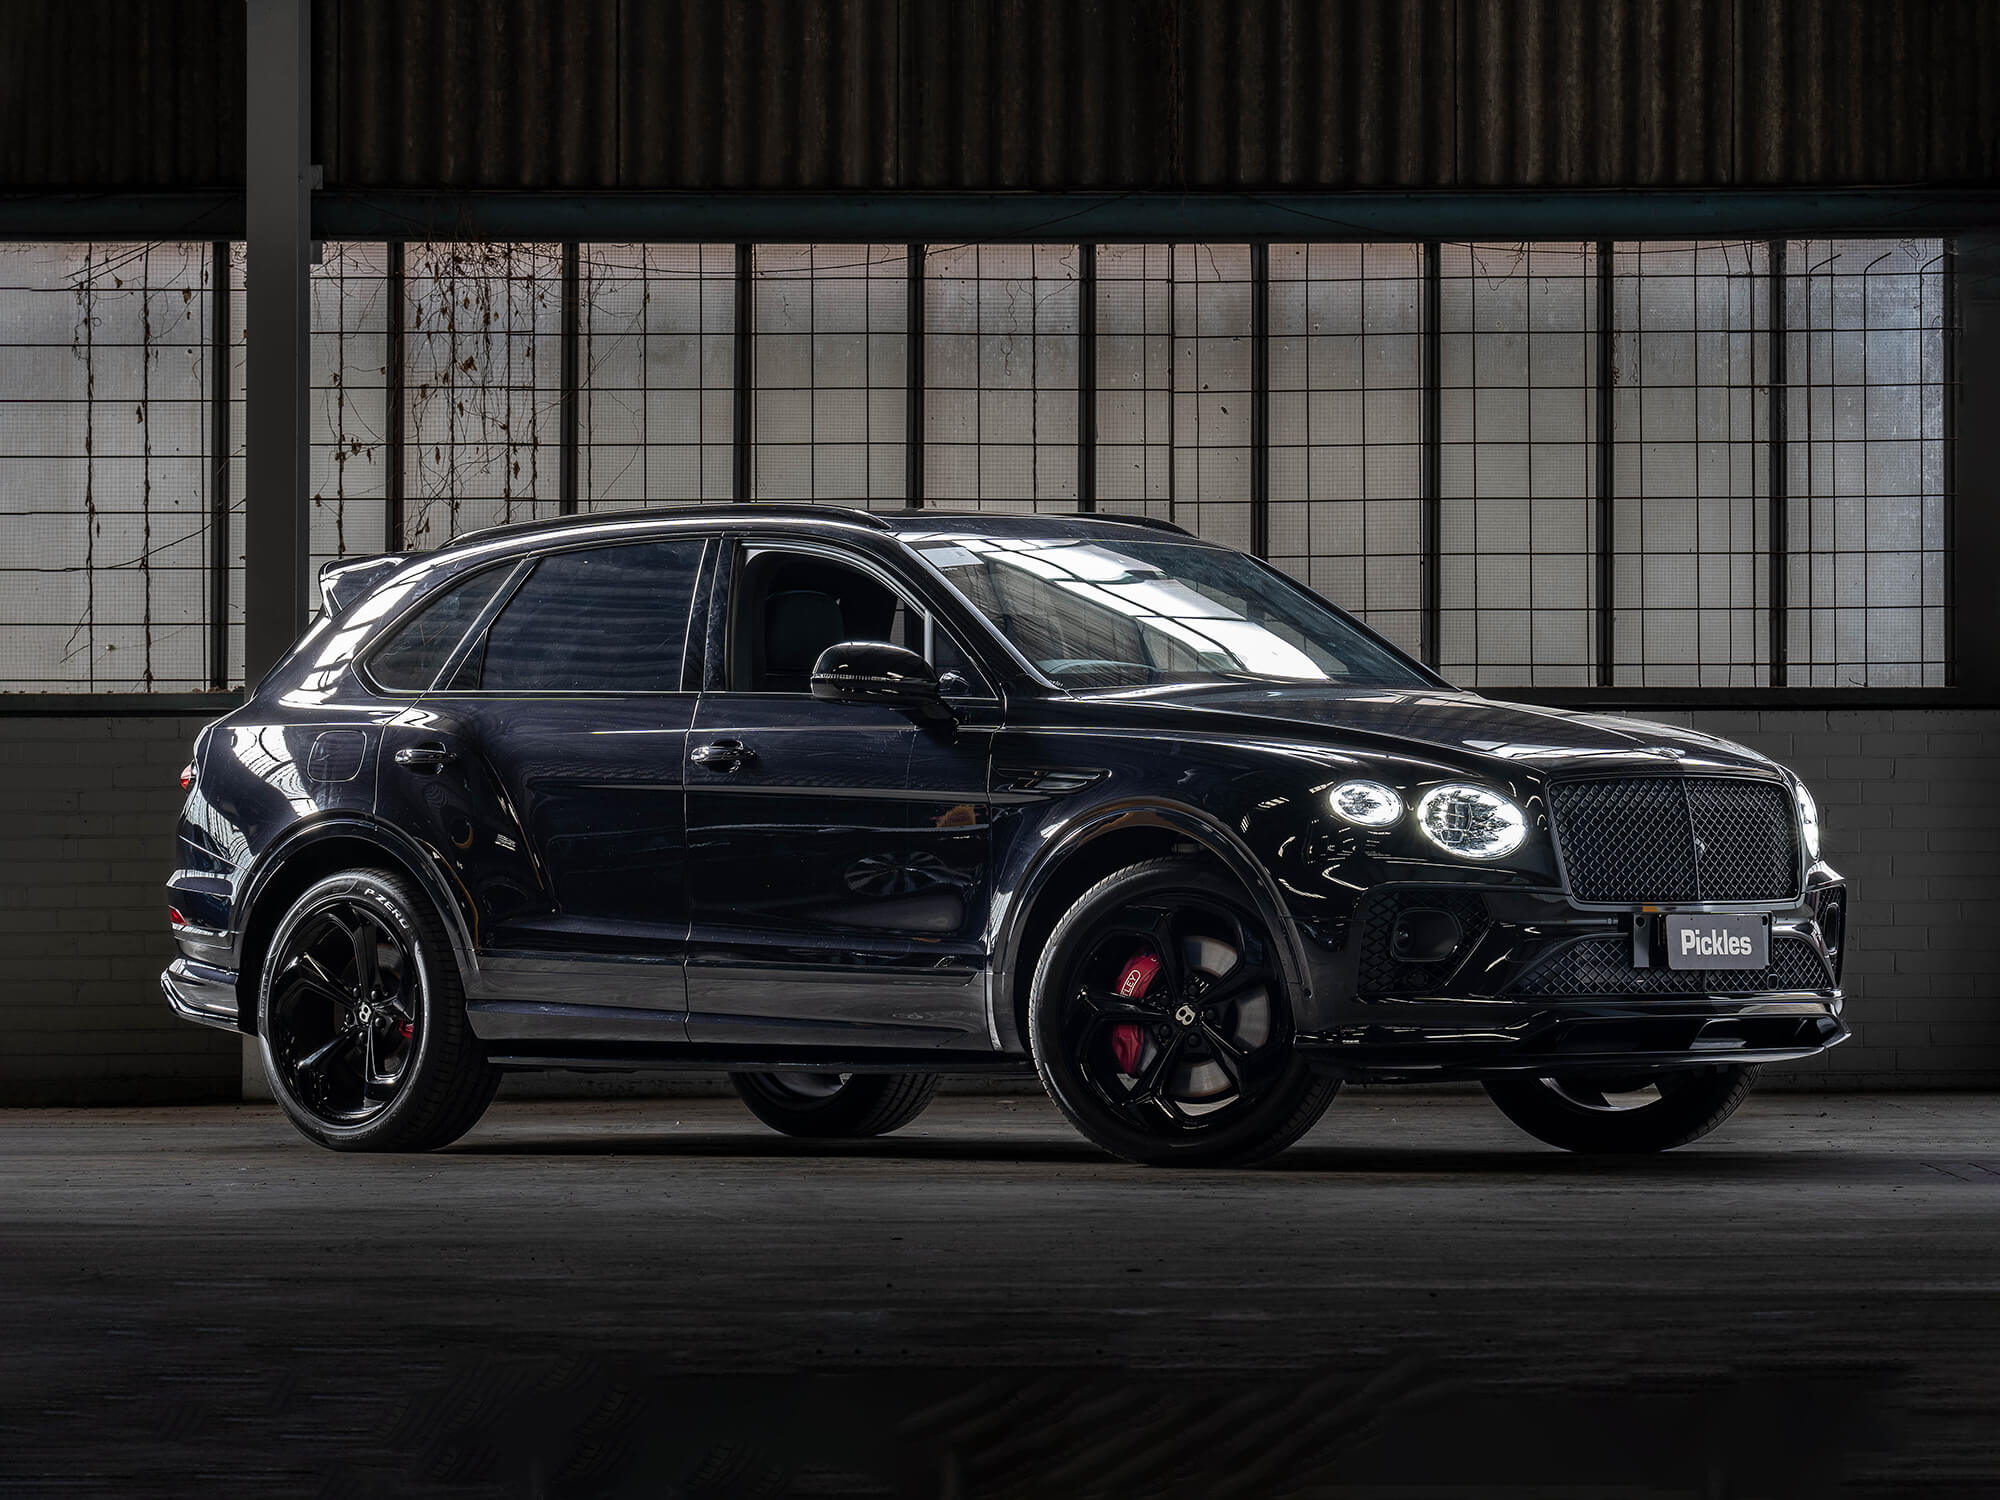 View a black 2022 Bentley Bentayga availble via auction.